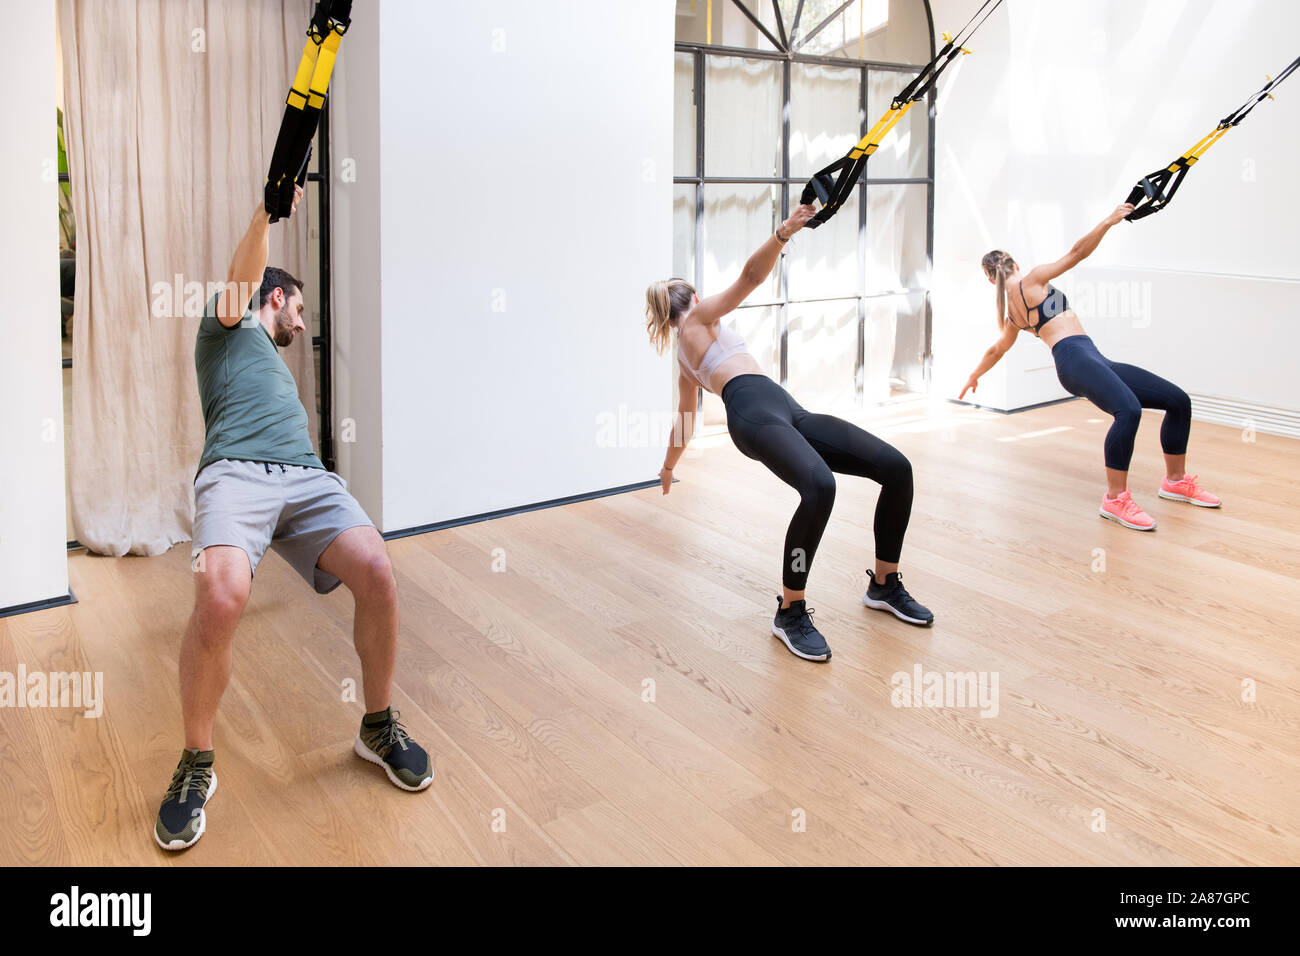 Drei Personen, die die Arbeit tun, Trx power zieht in ein Fitnessstudio mit gefederten Bügel und ihre Oberkörper drehen Stockfoto